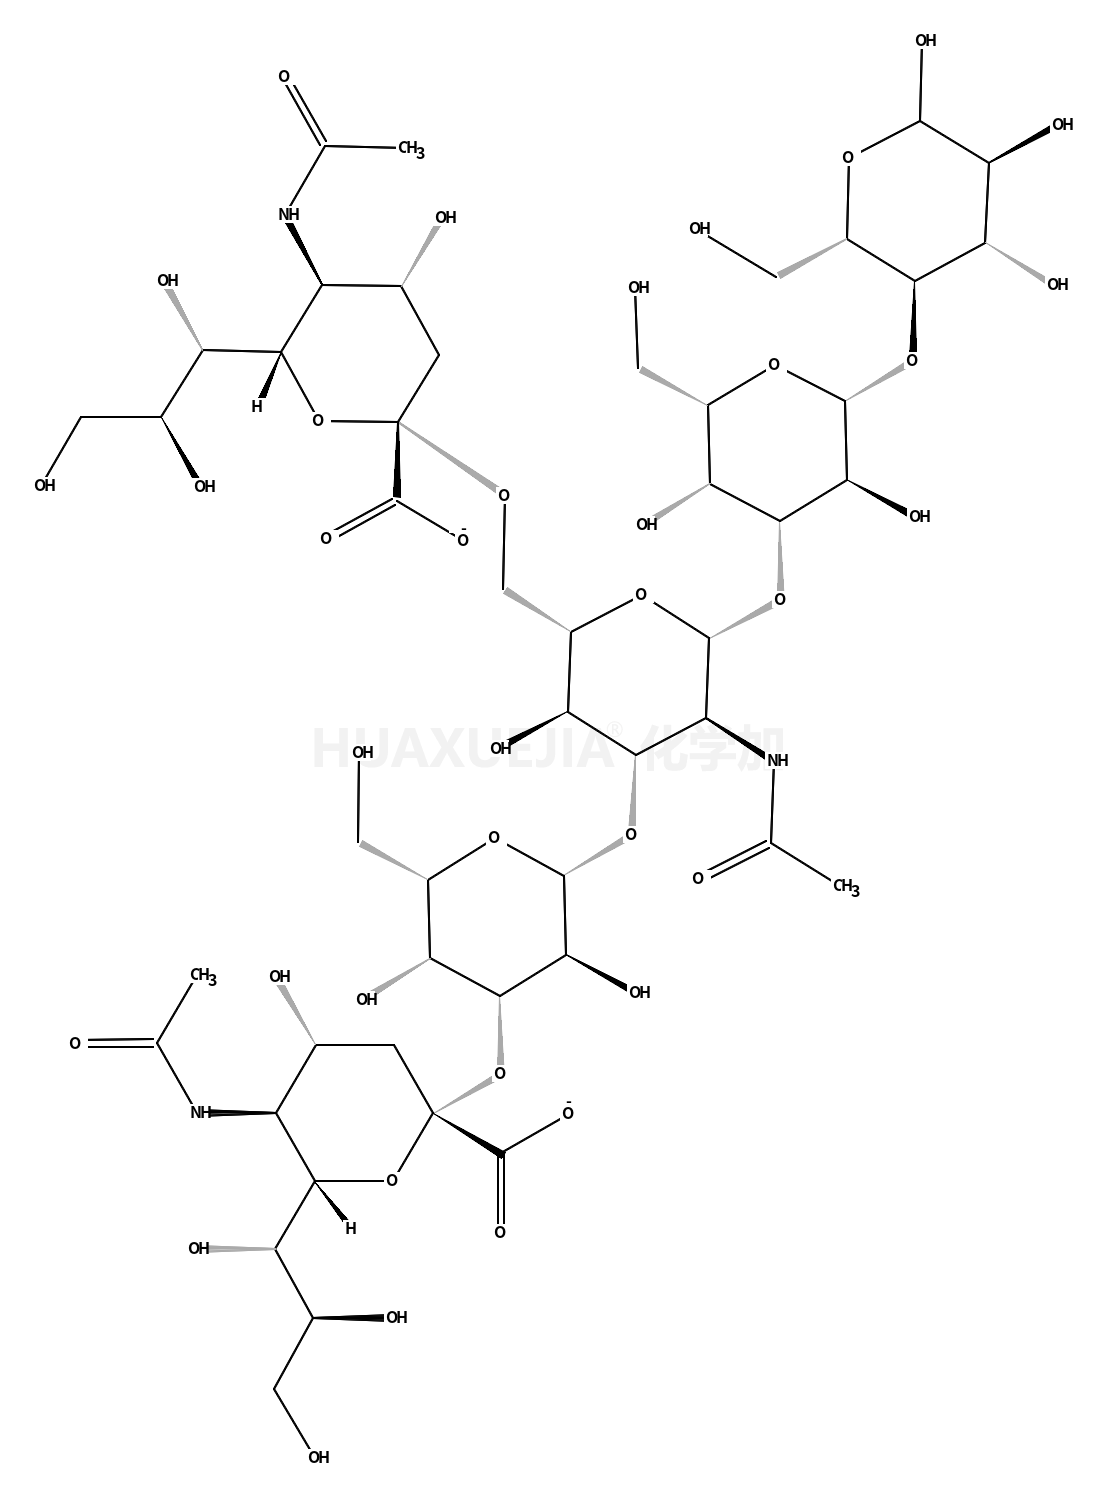 Disialyllacto-N-tetraose (DSLNT)